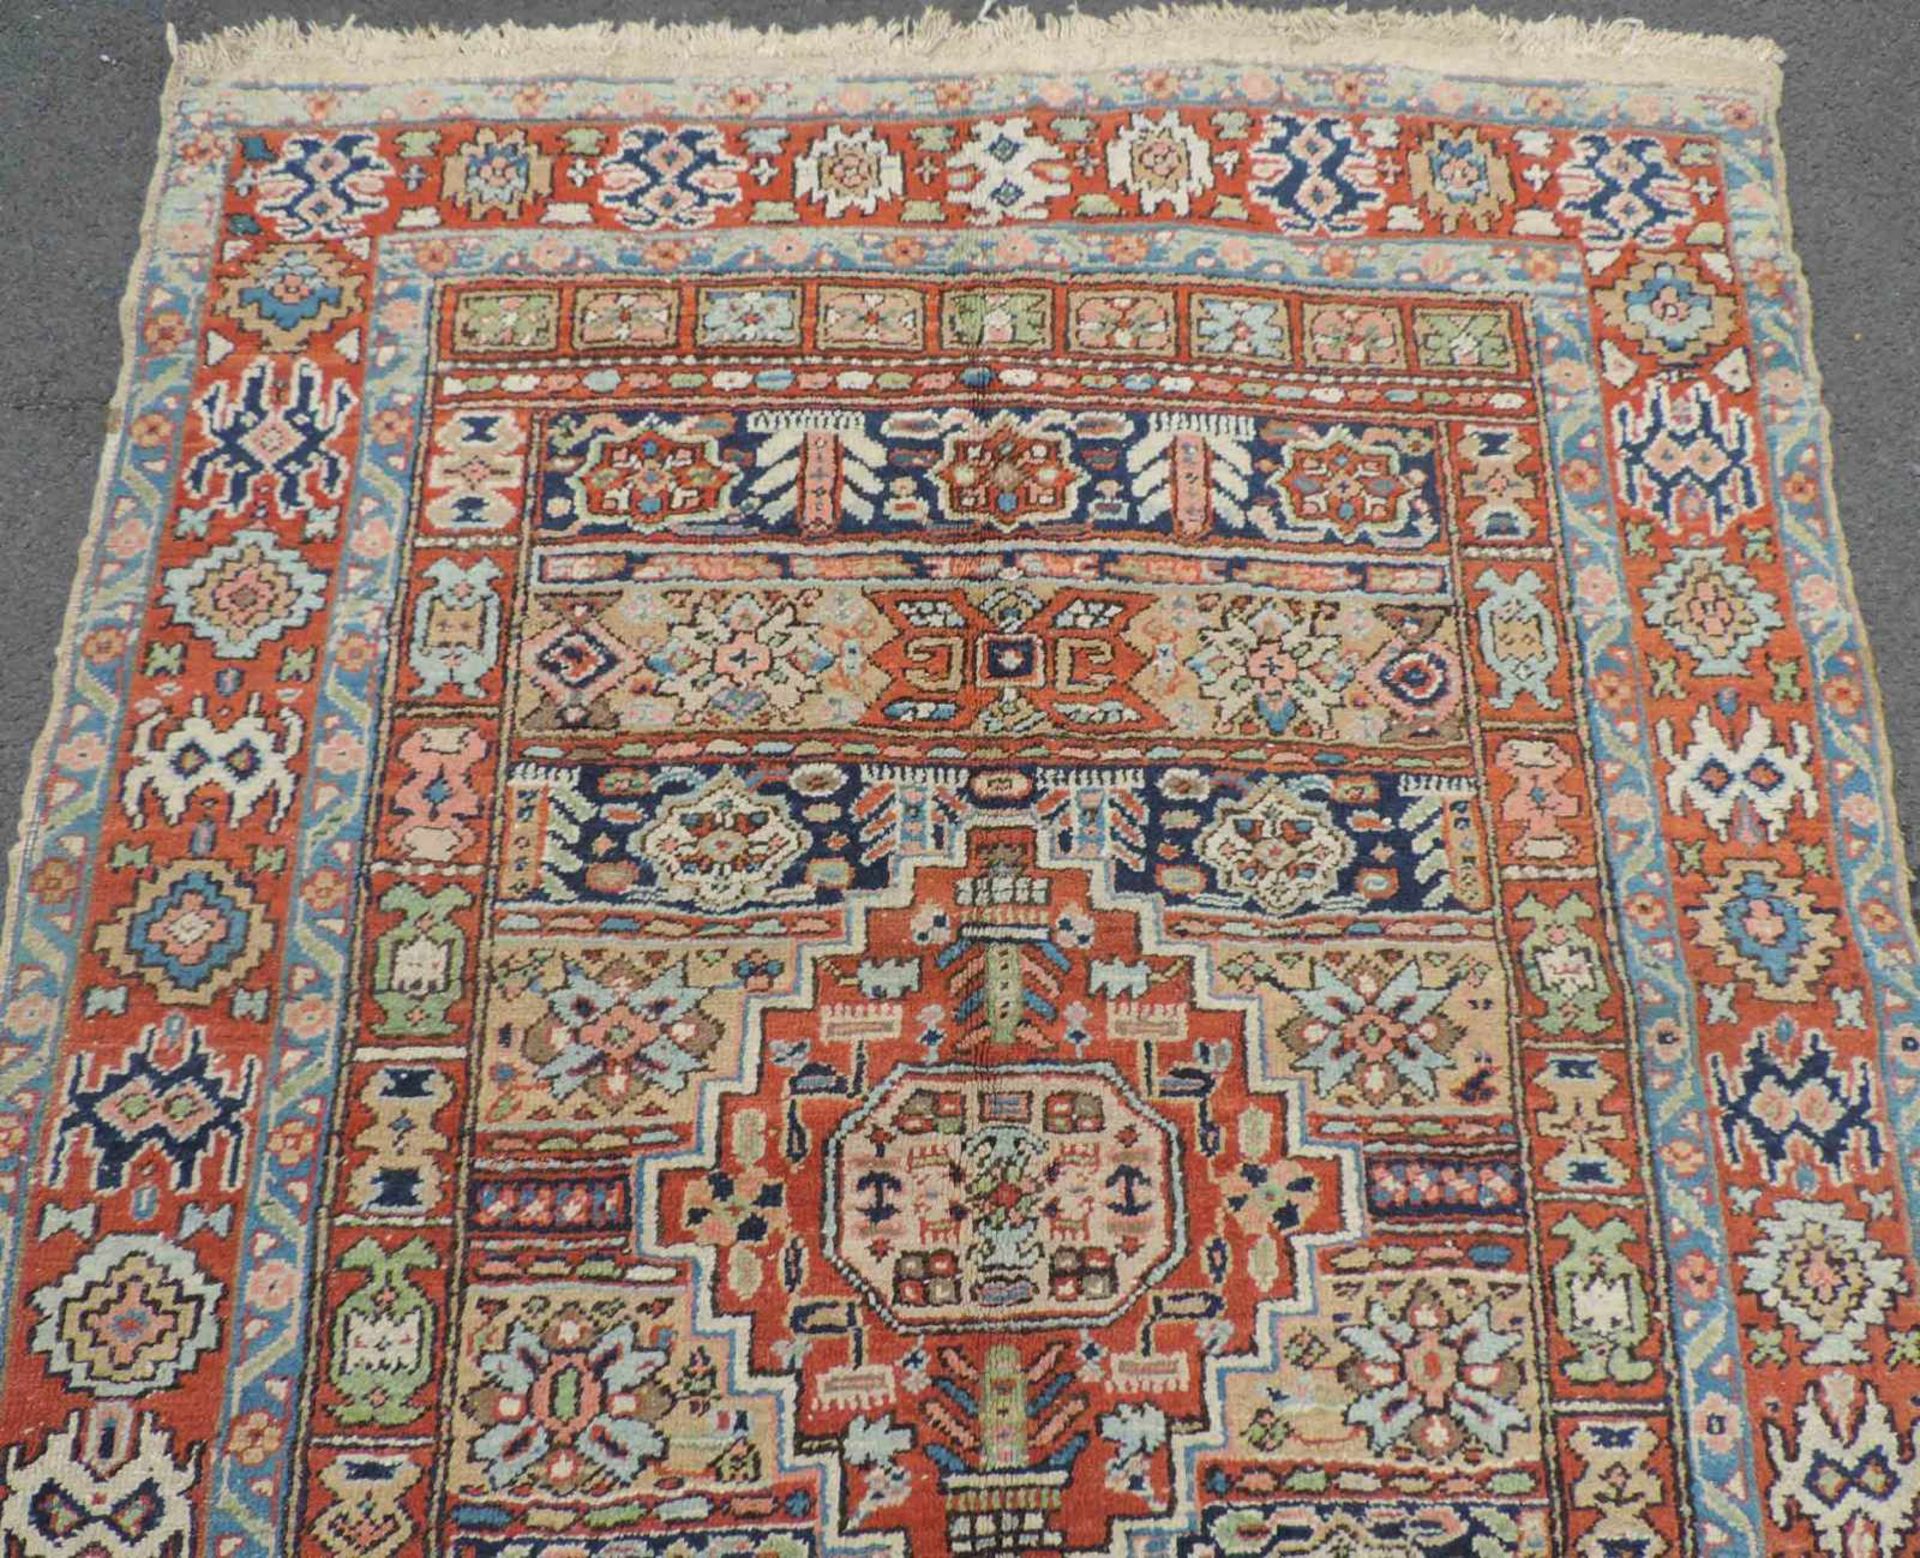 Heris Dorfteppich. Iran. Antik, um 1910. 175 cm x 133 cm. Handgeknüpft. Wolle auf Baumwolle. Wohl - Bild 3 aus 5